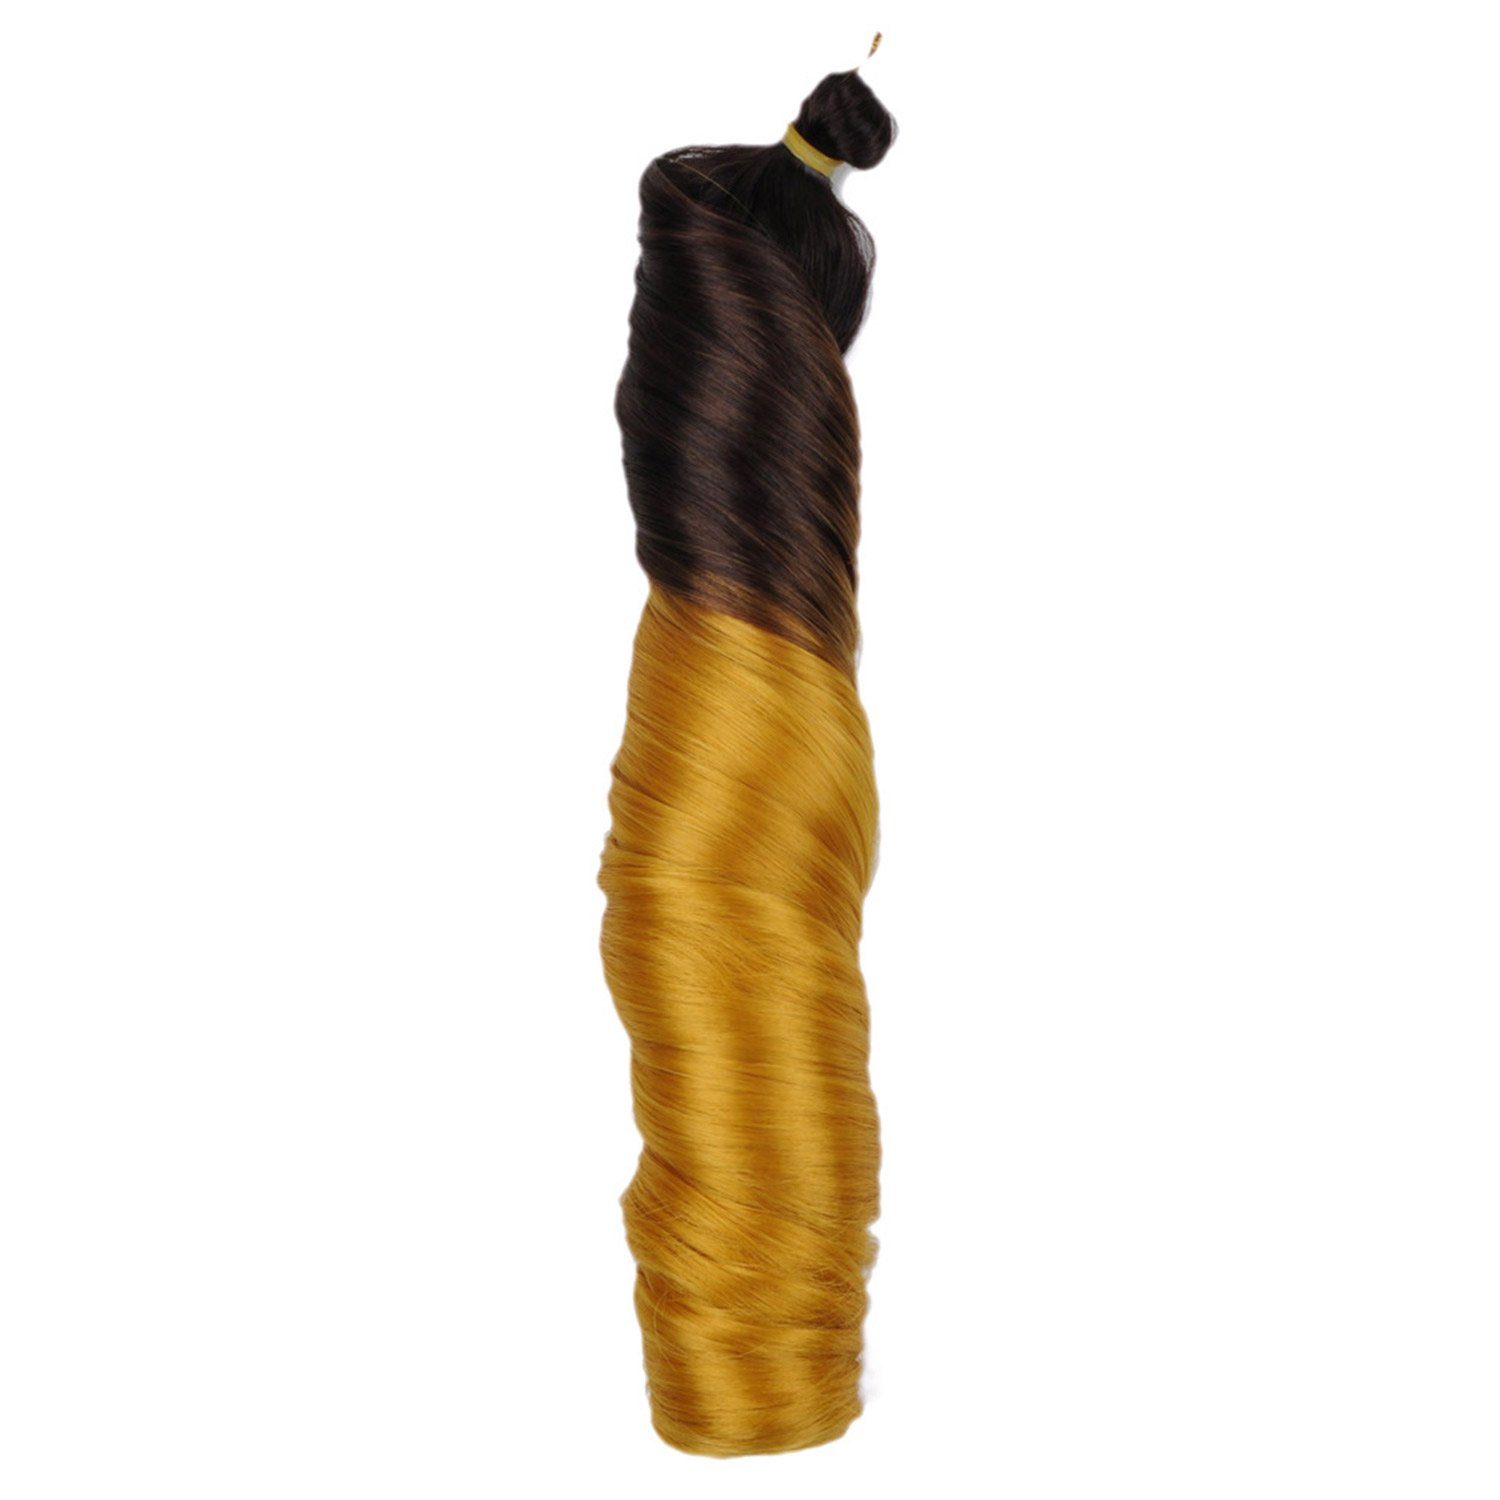 MAGICSHE Kunsthaarperücke 3Pack Französisch lockiges geflochtenes Haar, lose Welle Häkelgeflecht, Elastischer Zopf lockiger synthetischer Zopf (24 Zoll) 4/Gold#